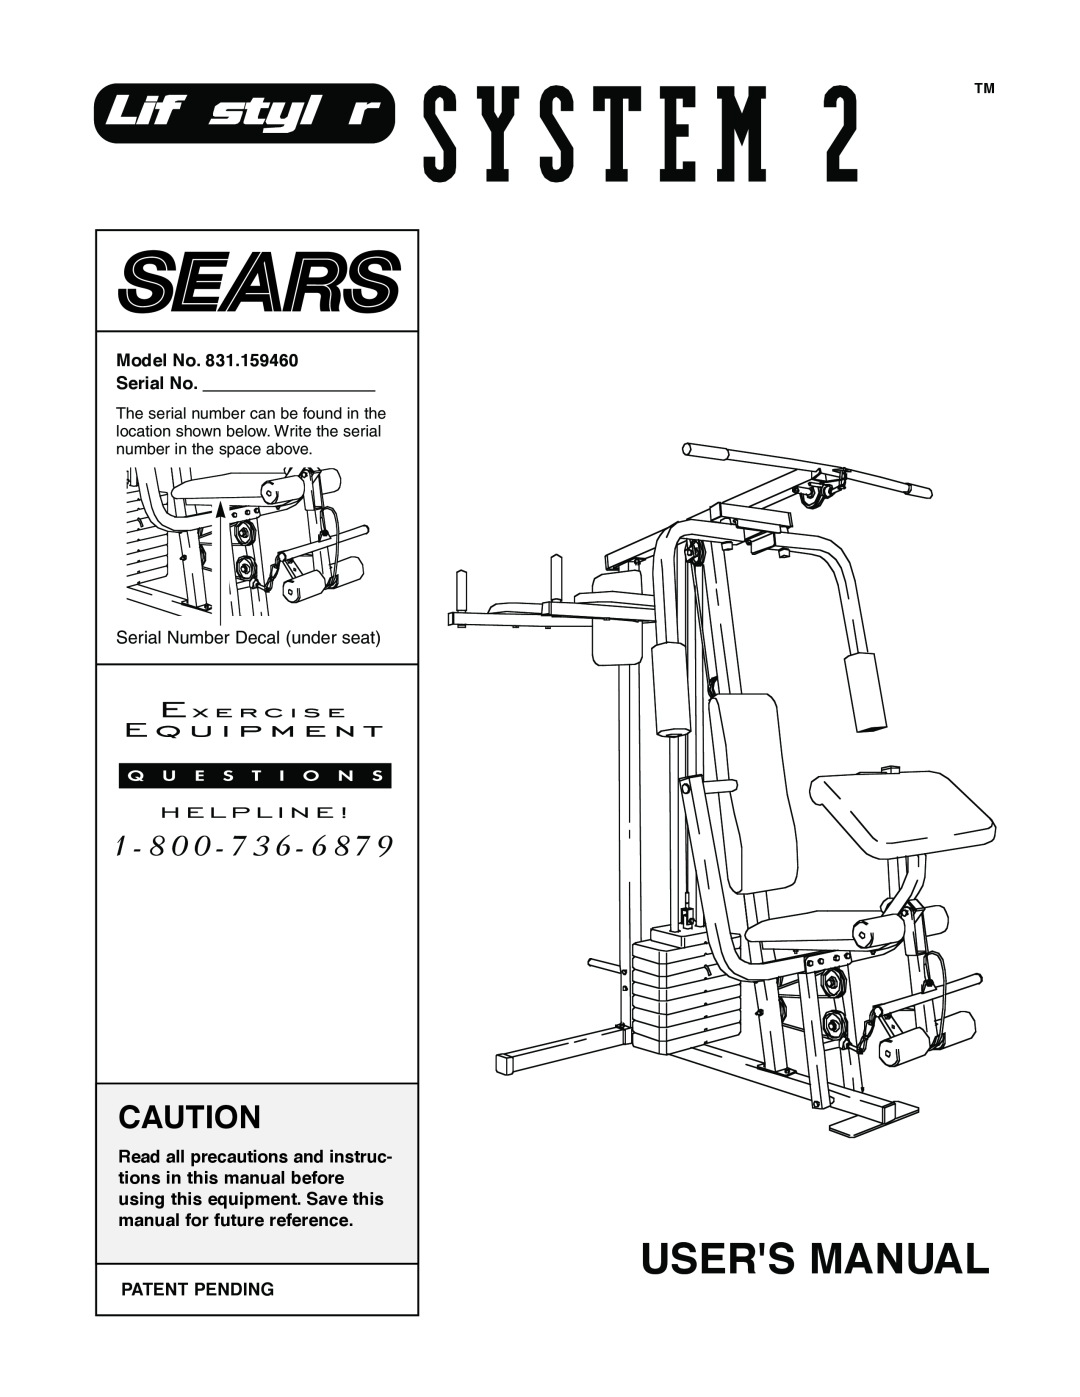 Sears 831.159460 user manual Model No Serial No, Patent Pending, Users Manual 